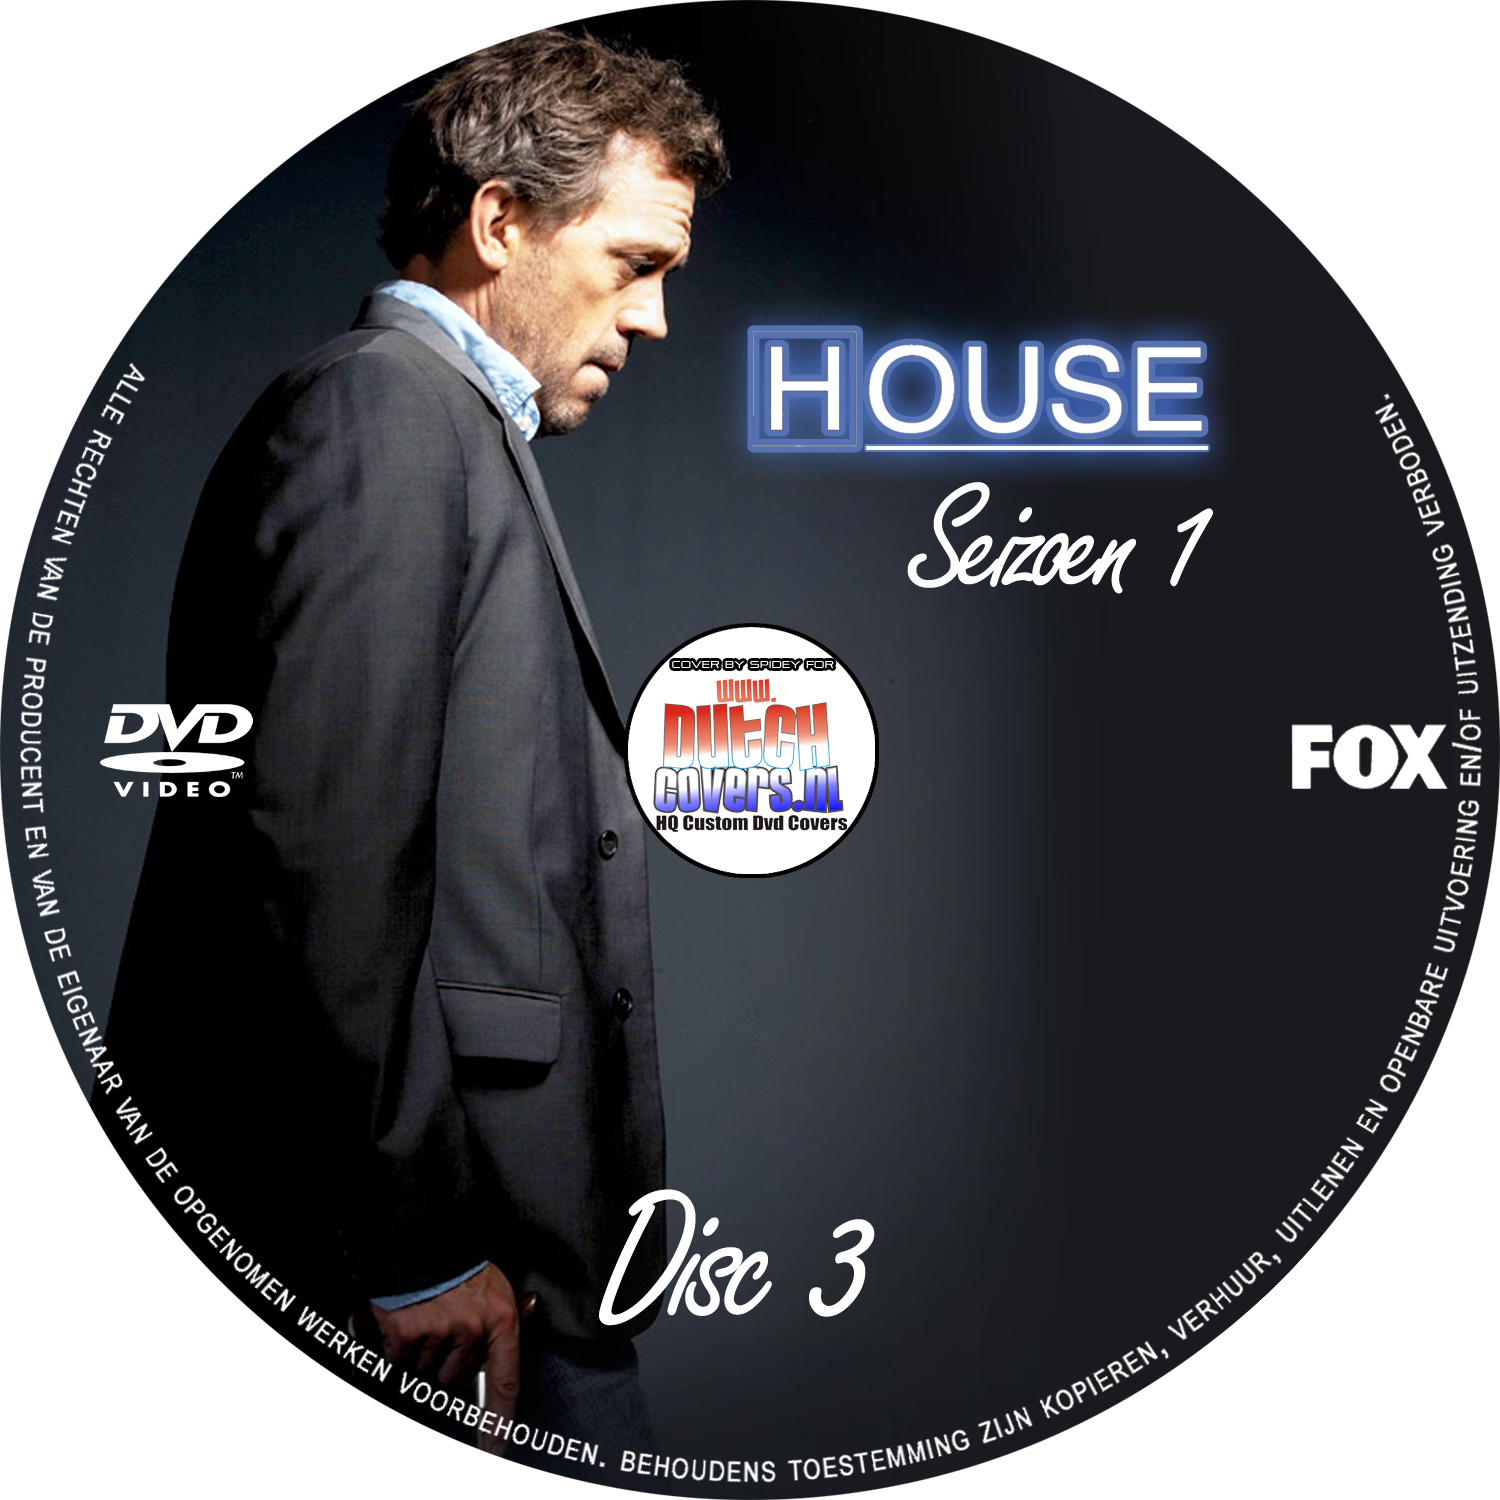 House dvd 3